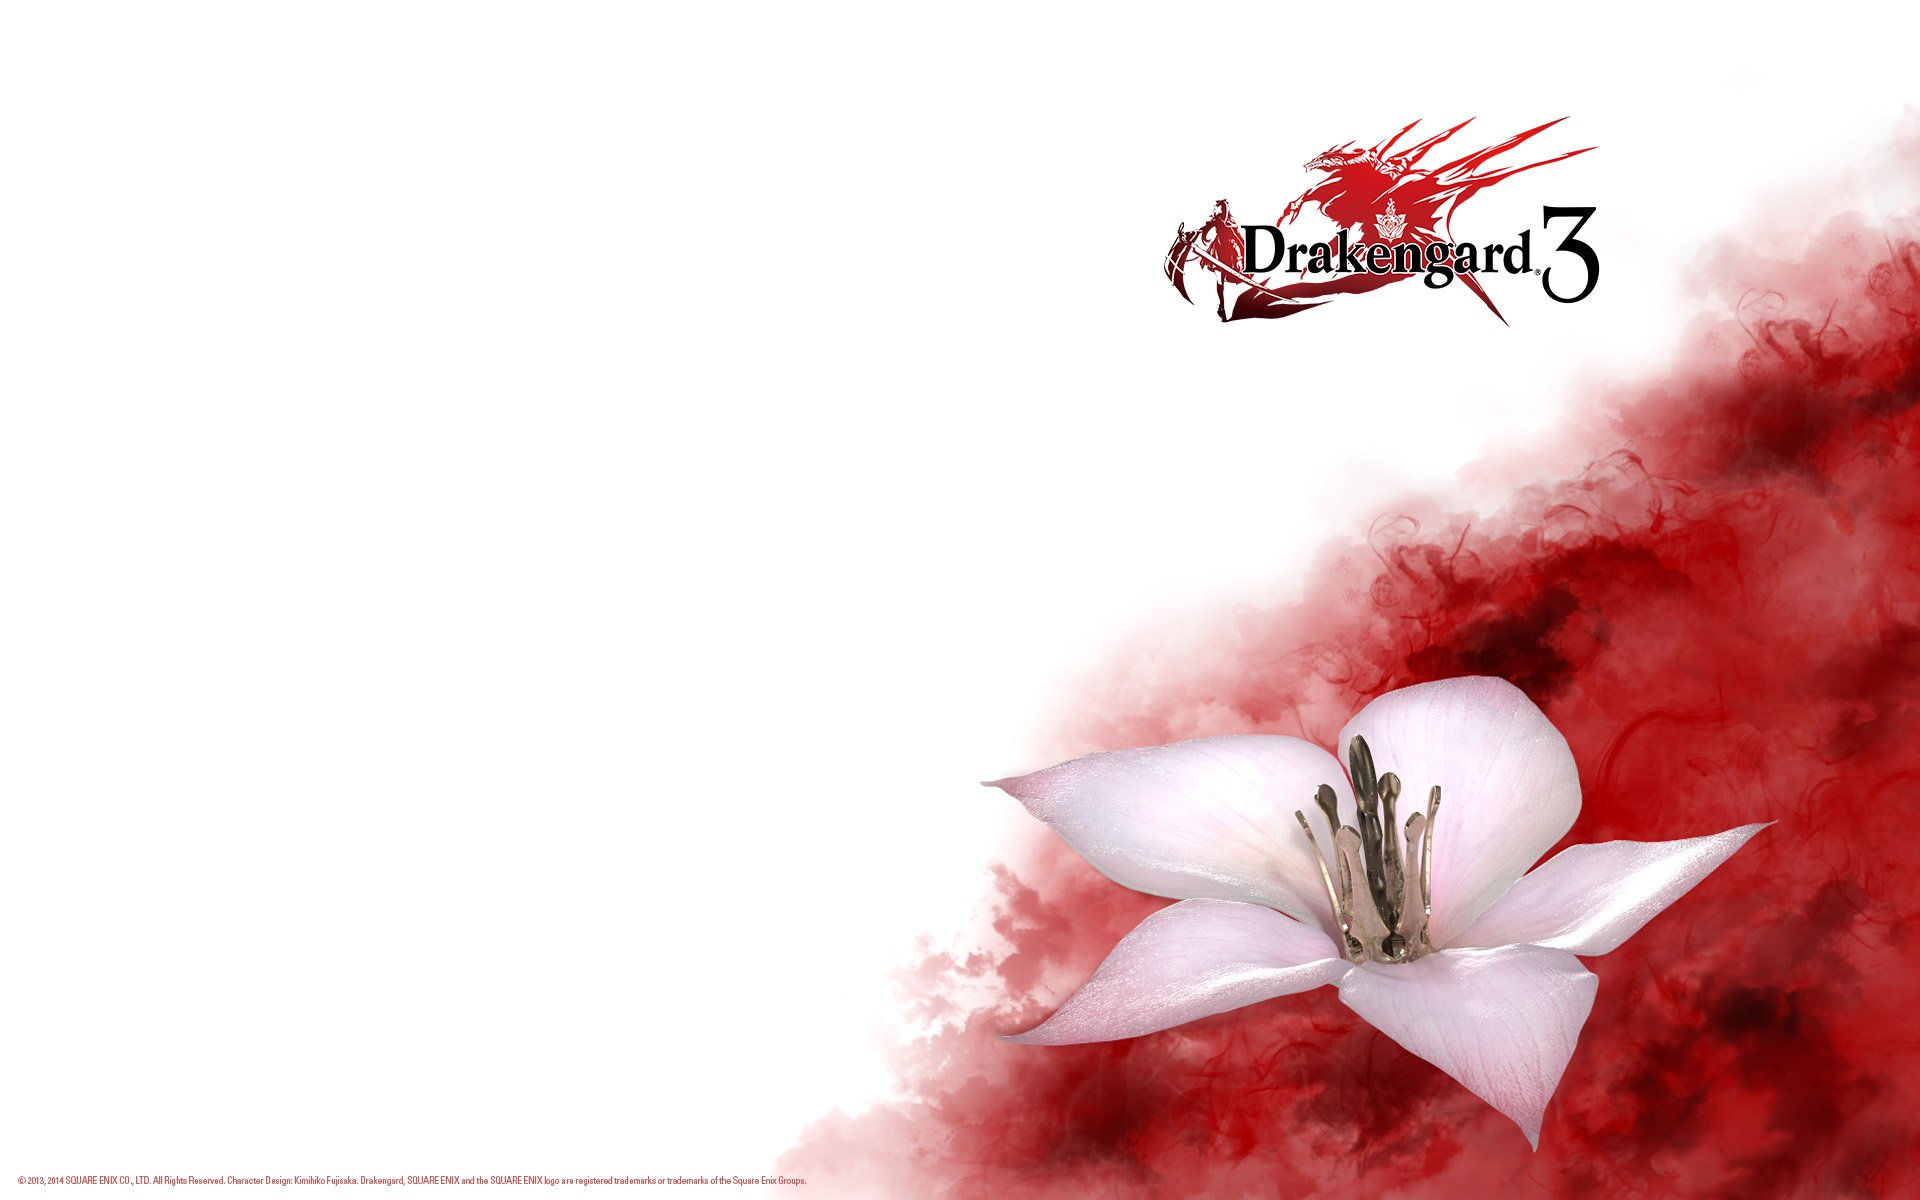 drakengard 3 download free